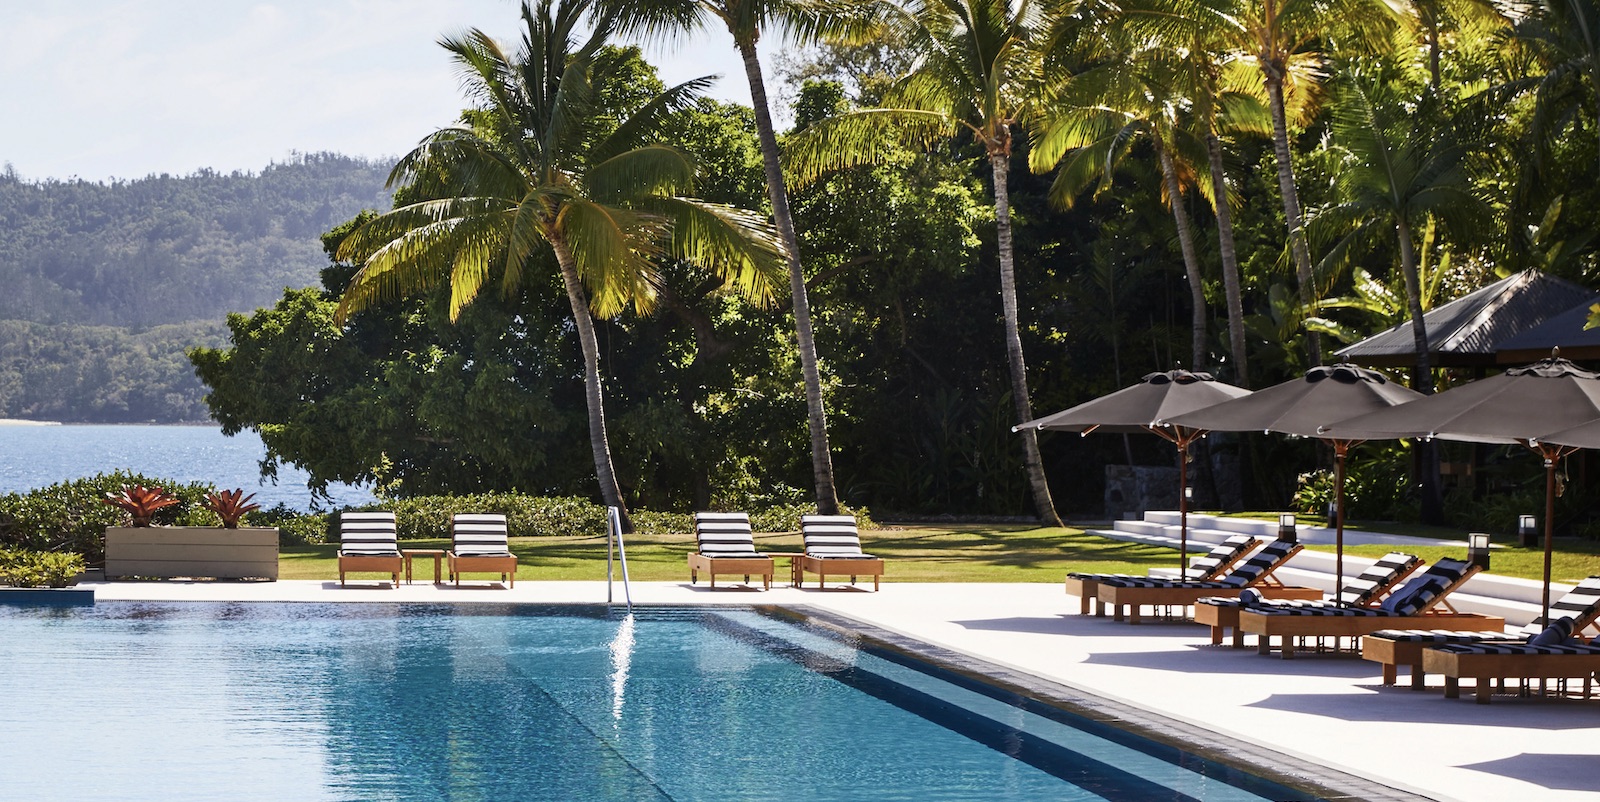 qualia pool Hamilton Island Whitsundays luxury resort